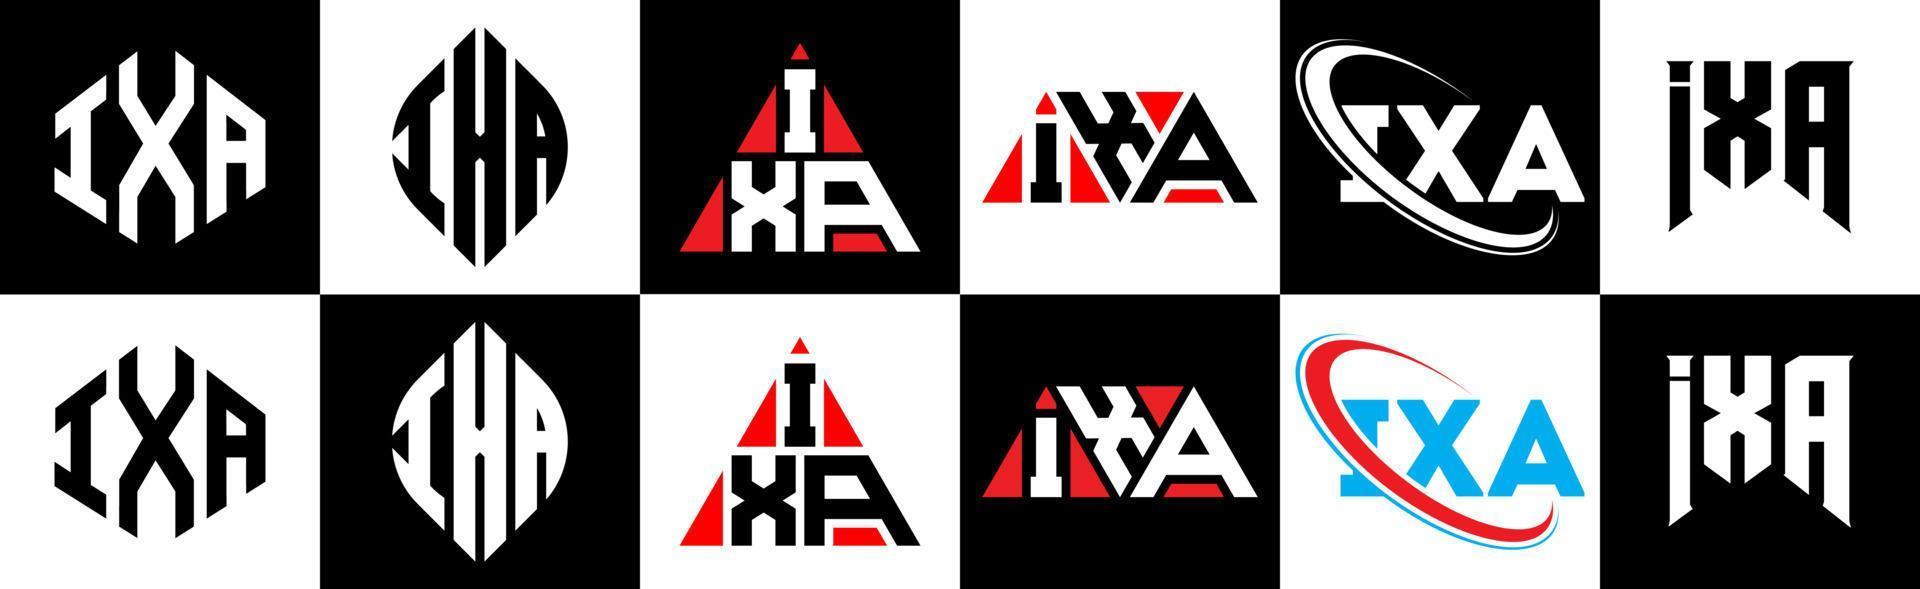 ixa-Buchstaben-Logo-Design in sechs Stilen. ixa polygon, kreis, dreieck, sechseck, flacher und einfacher stil mit schwarz-weißem buchstabenlogo in einer zeichenfläche. ixa minimalistisches und klassisches Logo vektor